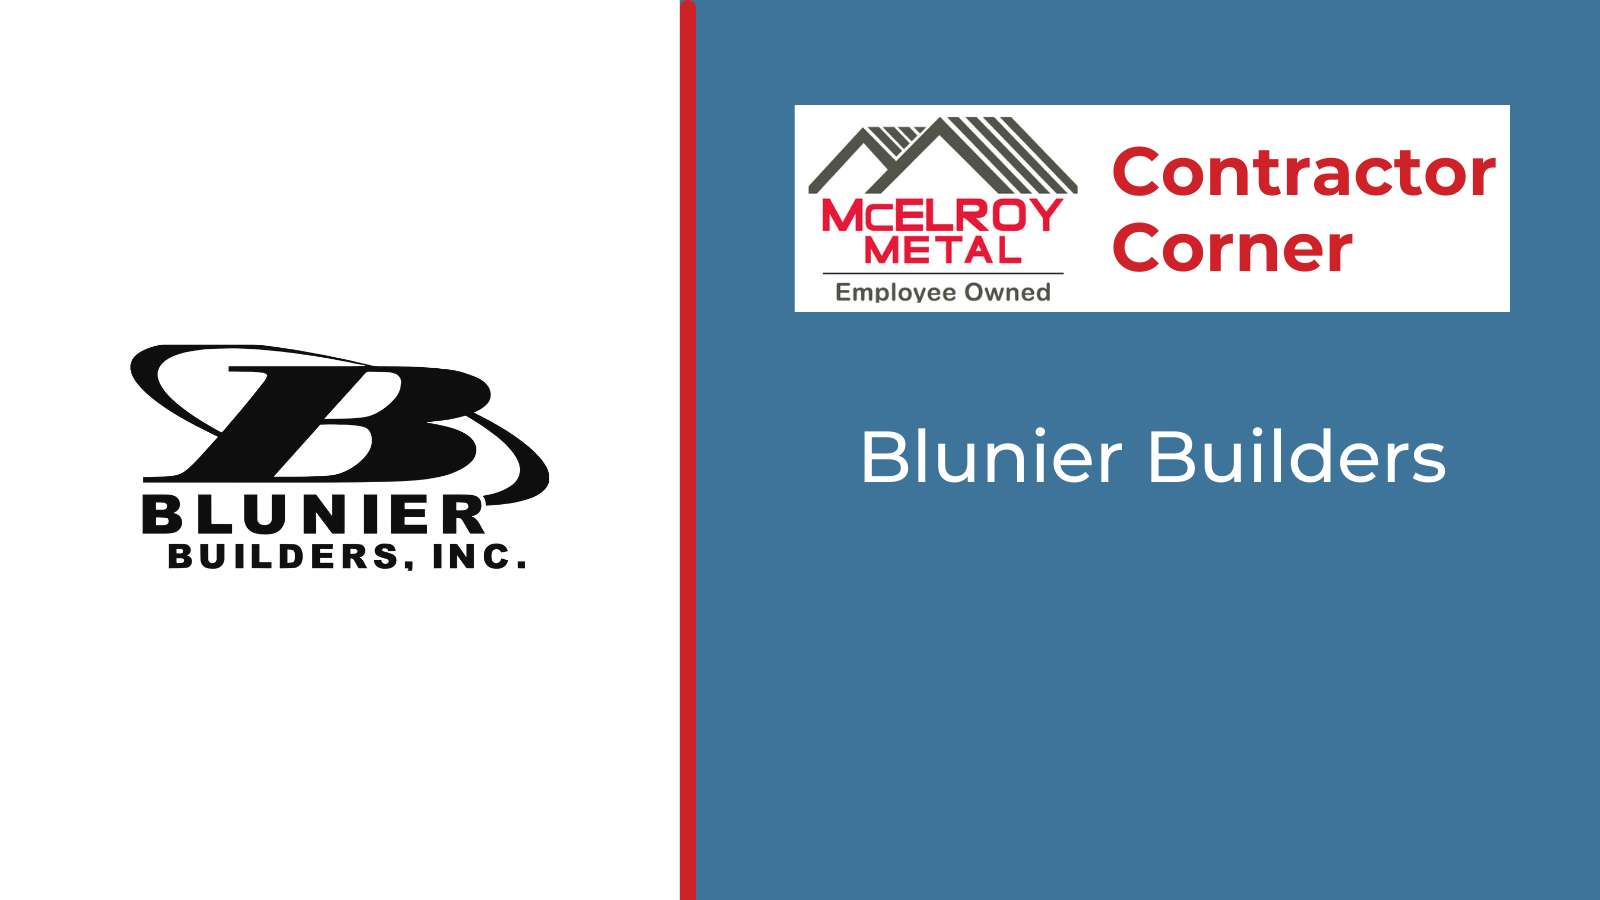 Contractor Corner - Blunier Builders